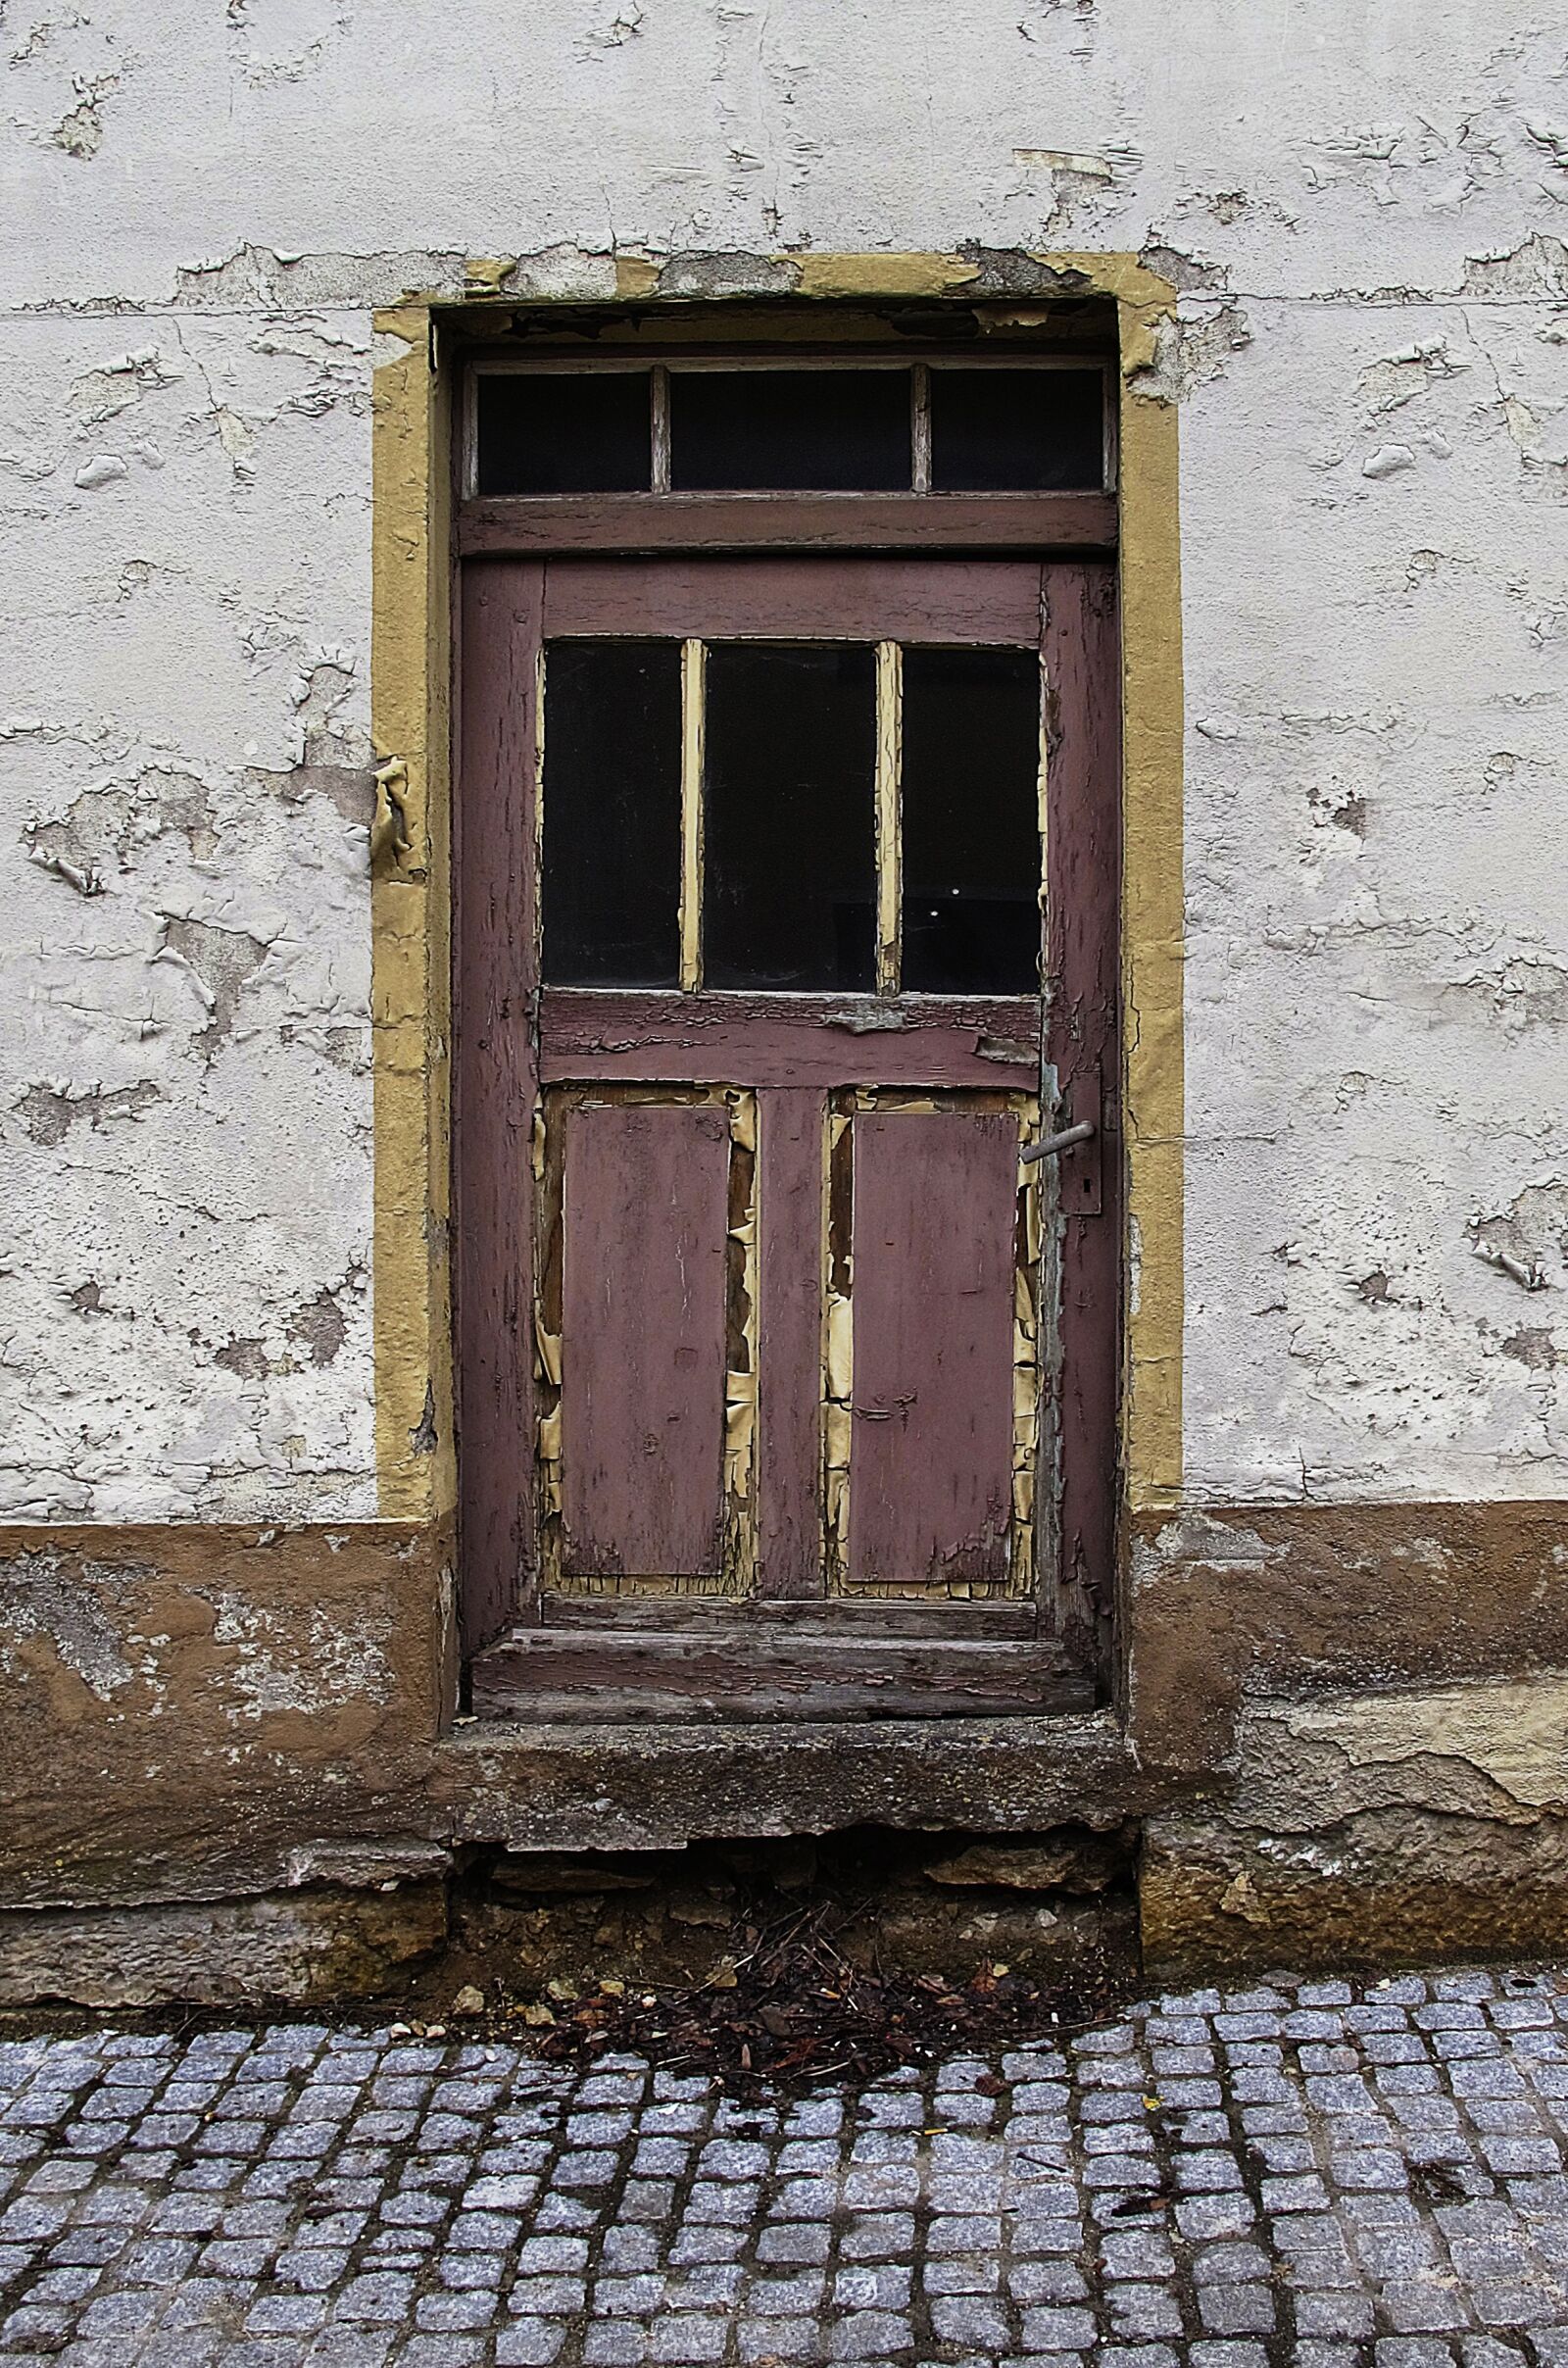 Canon PowerShot G12 sample photo. Door, old door, wooden photography